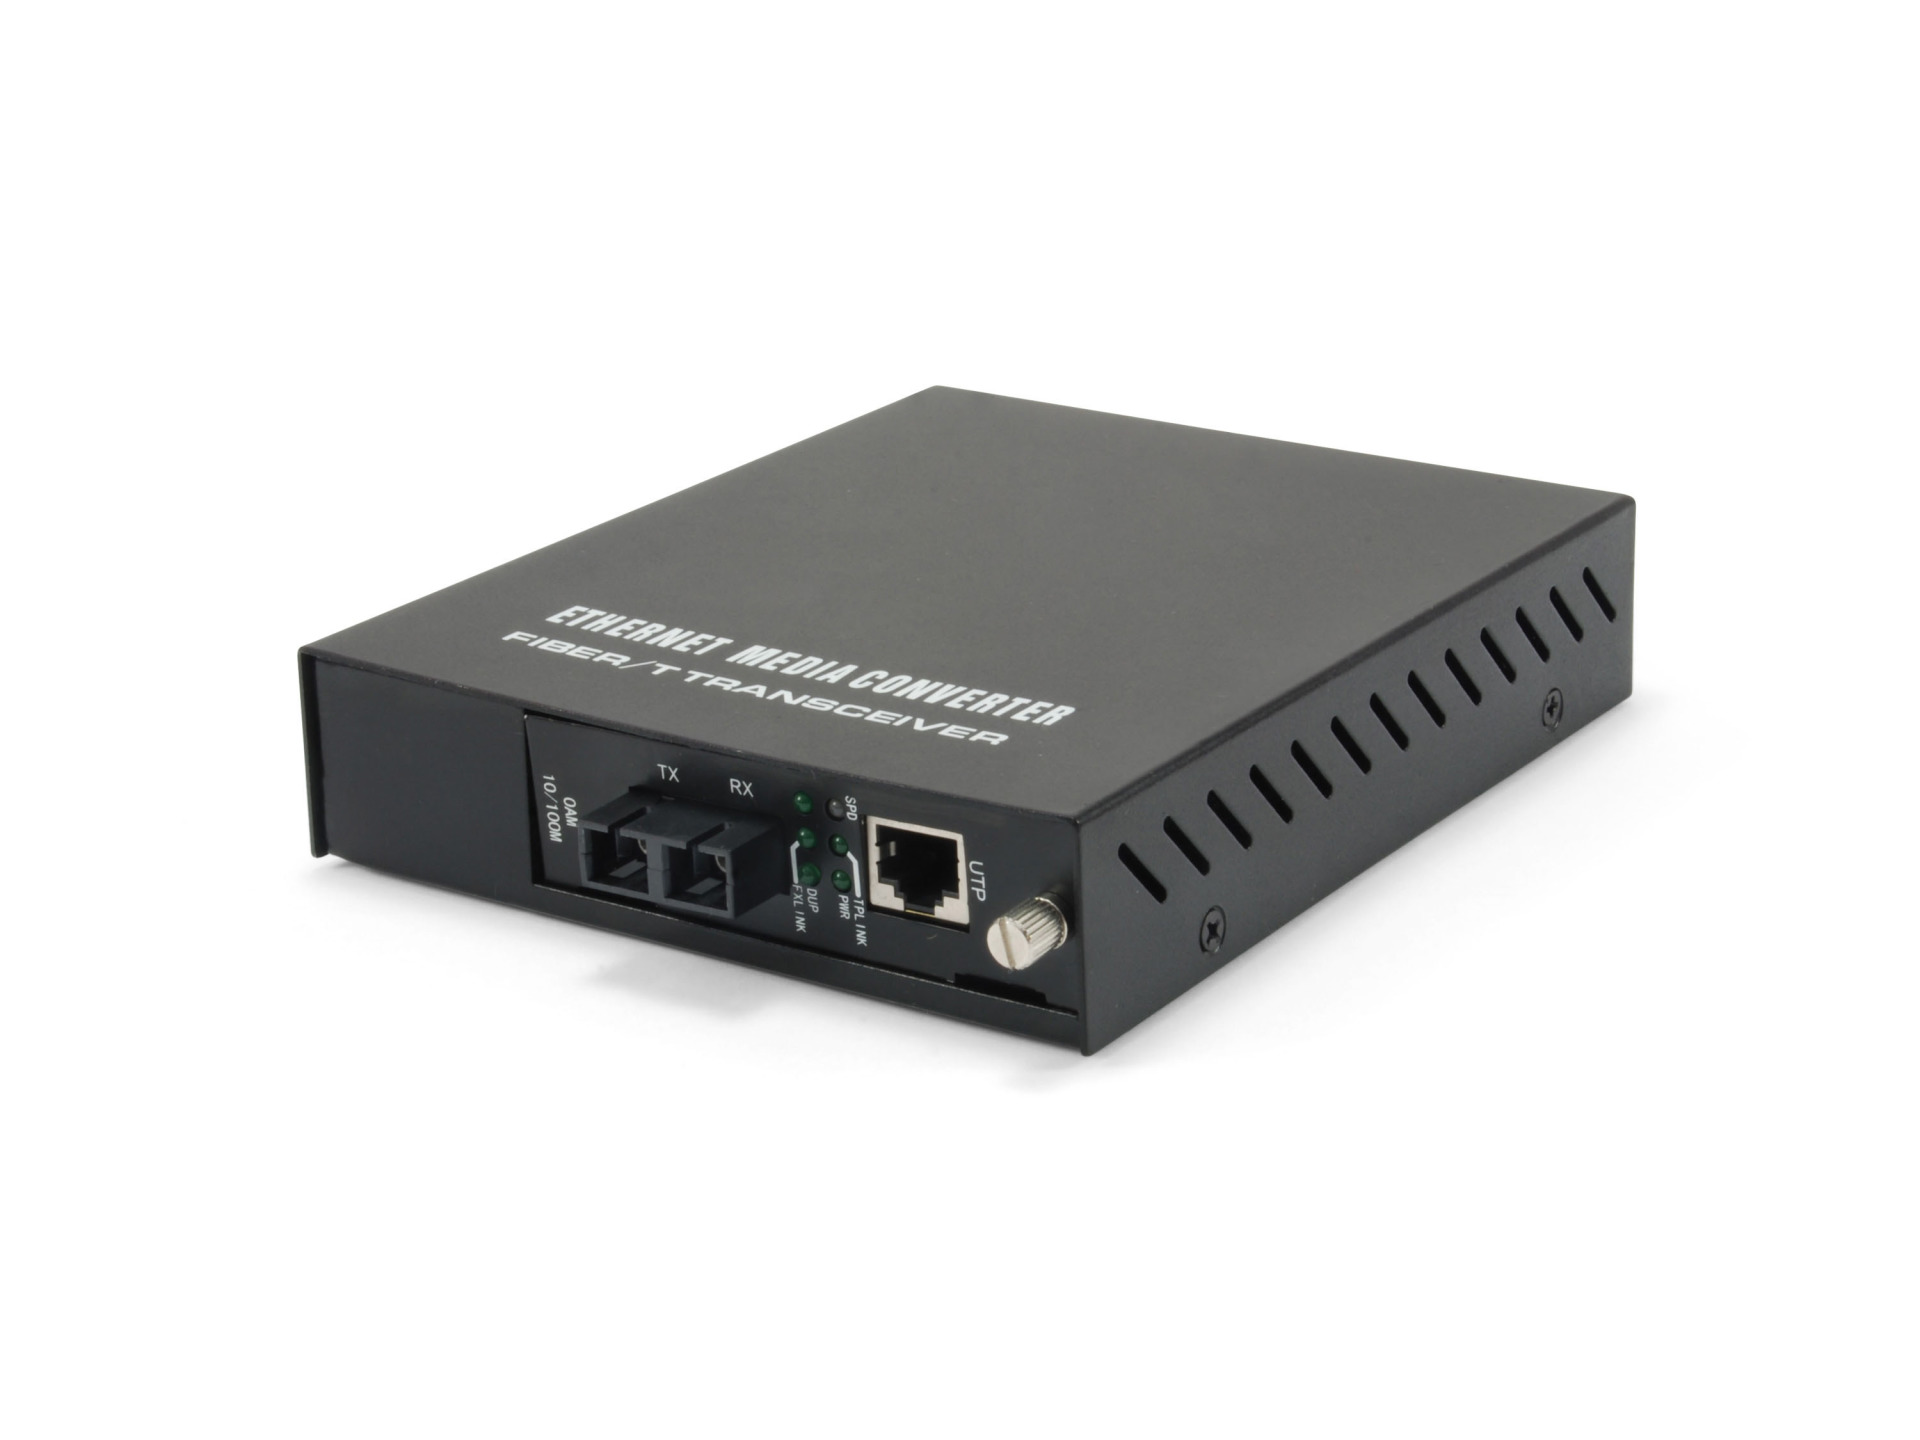 RJ45 to SC Managed Fast Ethernet Media Konverter, SM Fiber 20km